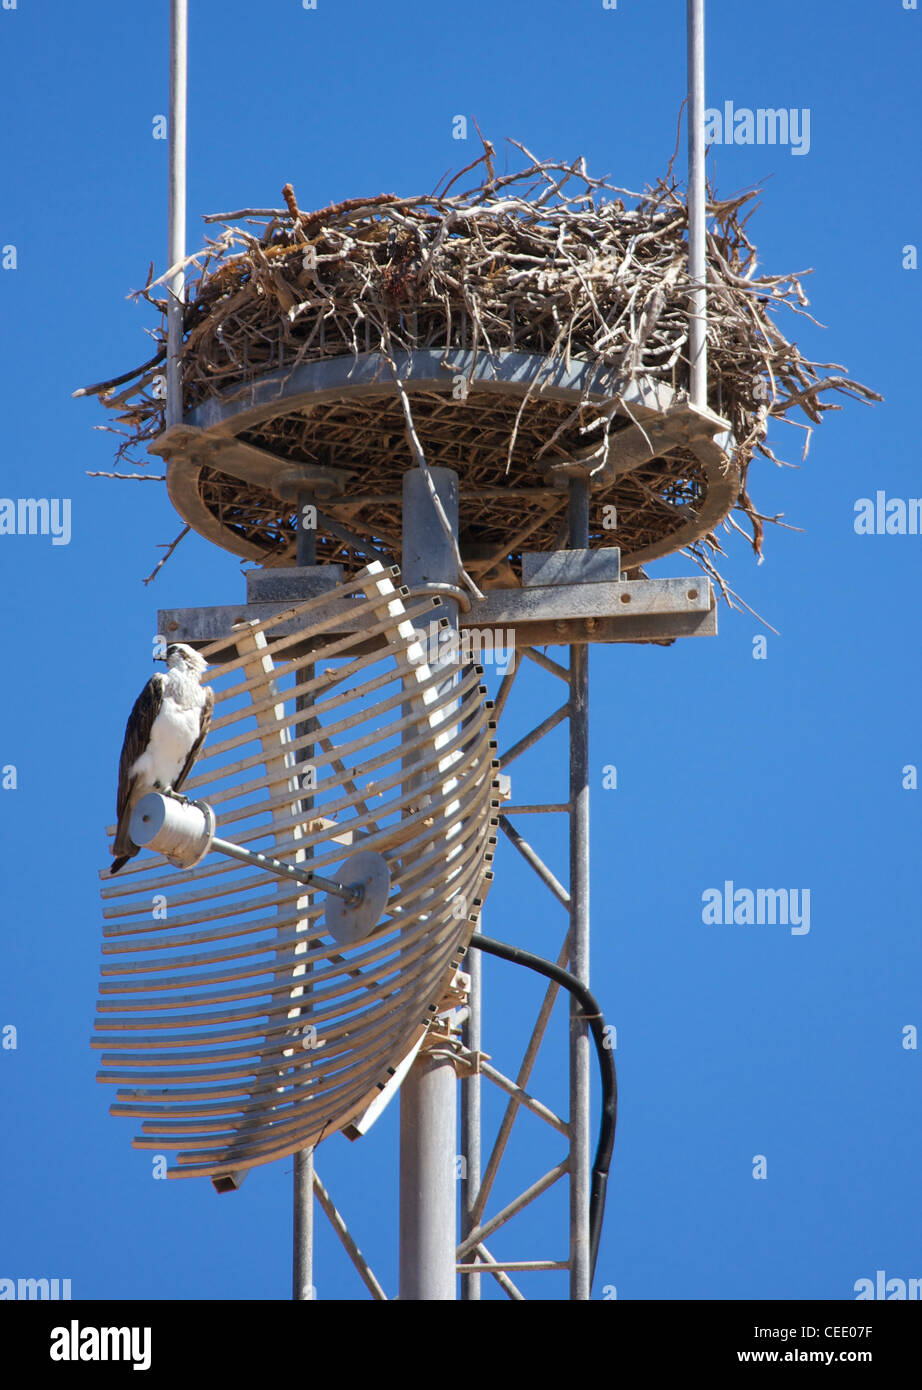 Mât de communication construit avec une plate-forme de nidification occupé par un Balbuzard à Cape Range National Park Australie Occidentale Banque D'Images